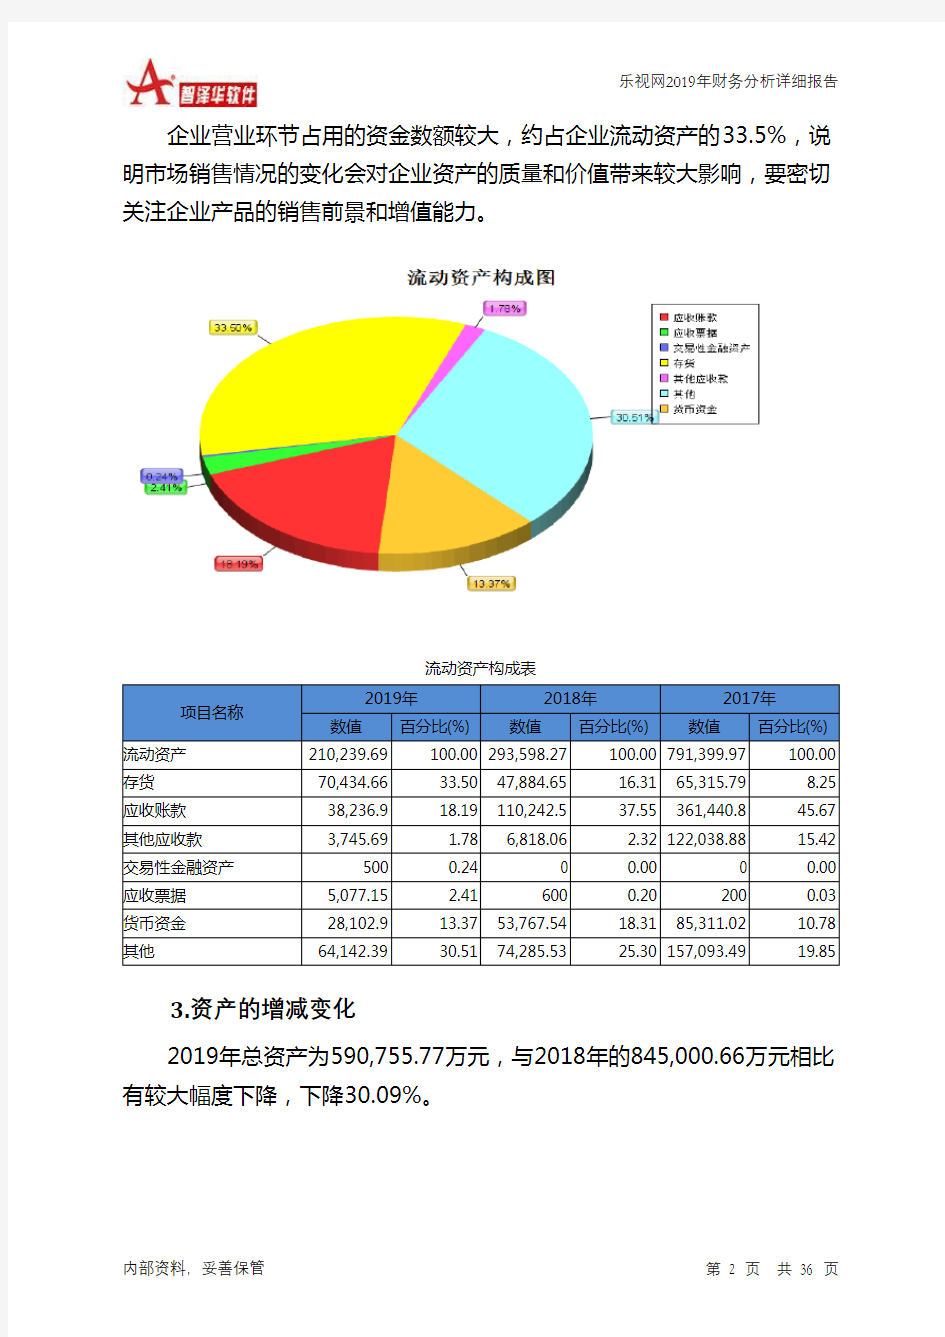 乐视网2019年财务分析详细报告